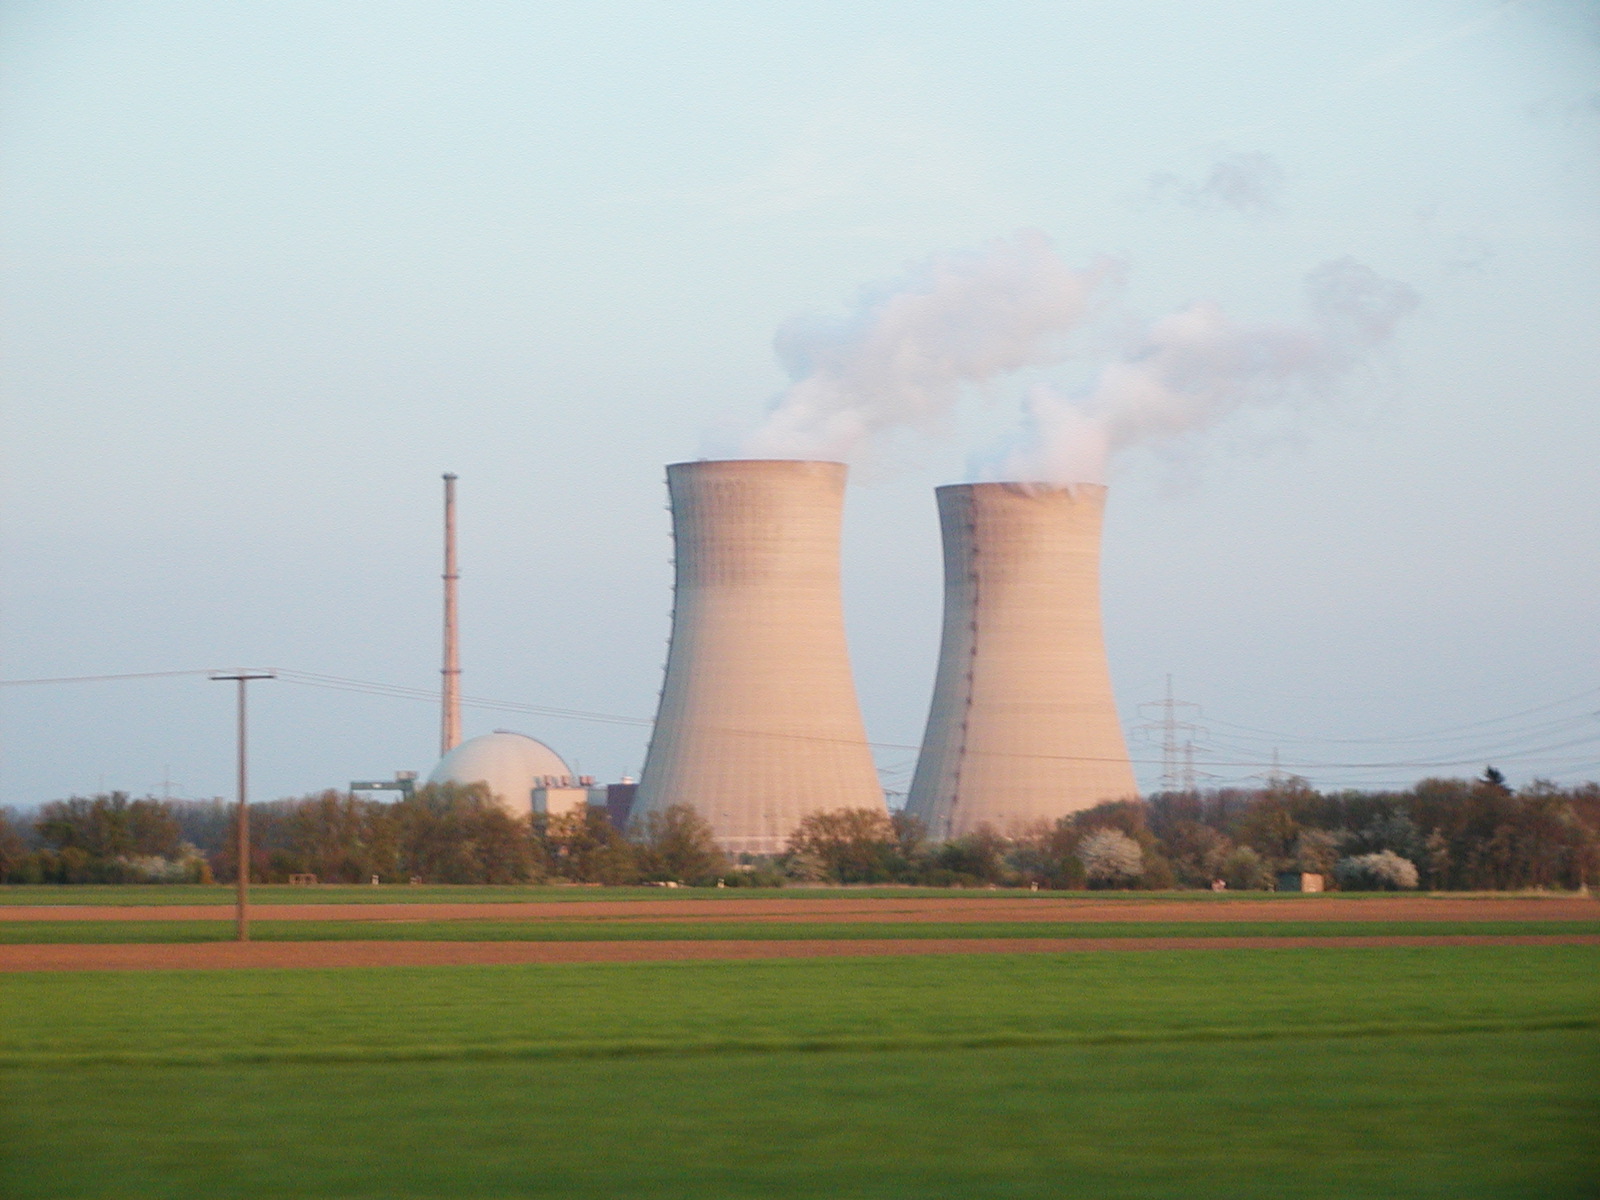 Power plant photo